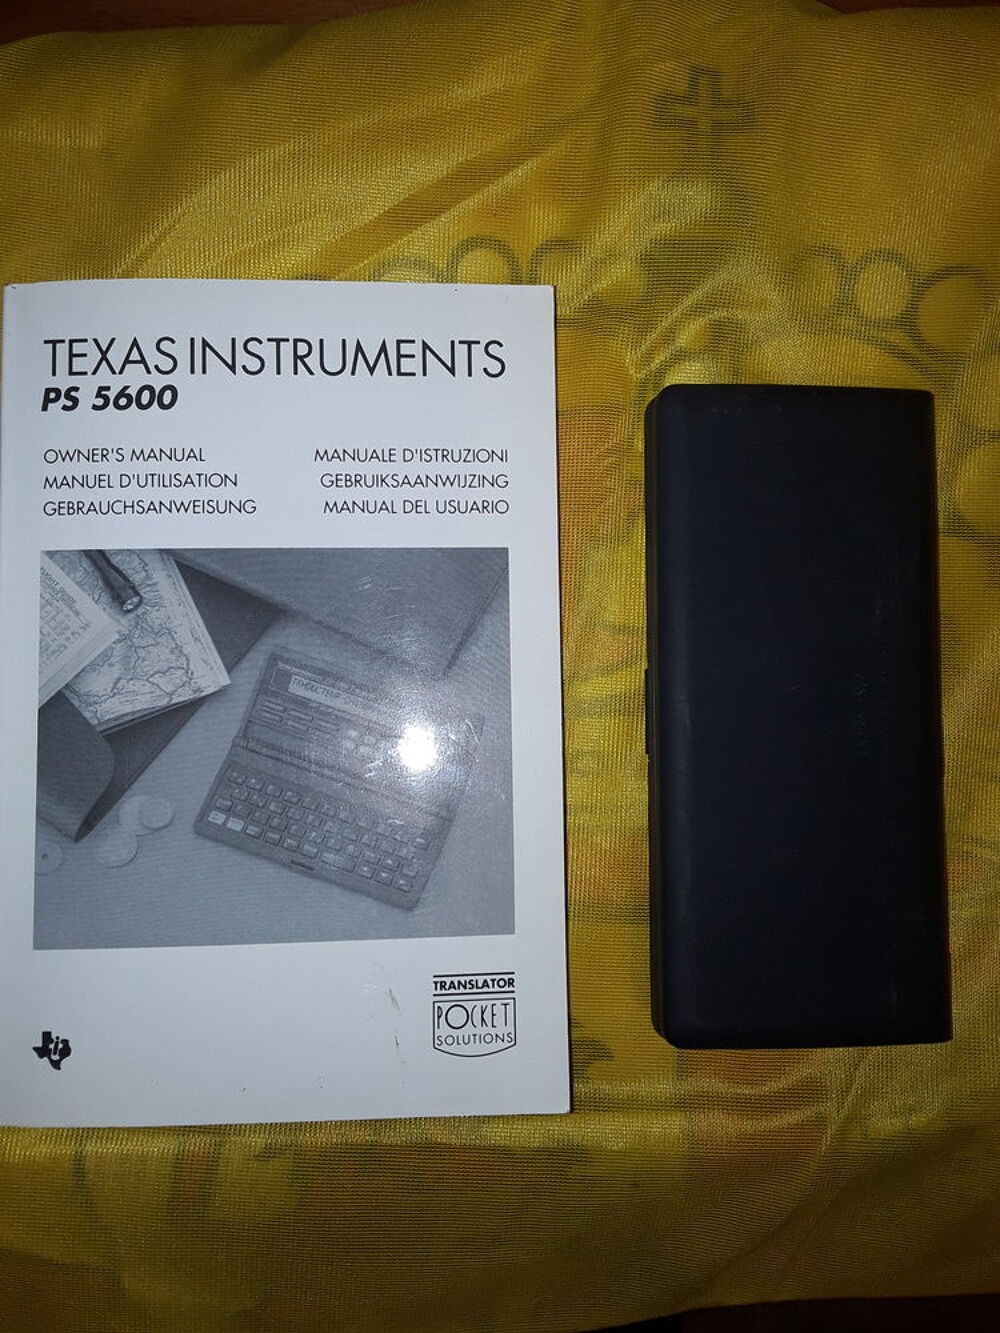 Texas Instruments - PS-5600 traducteur Matriel informatique